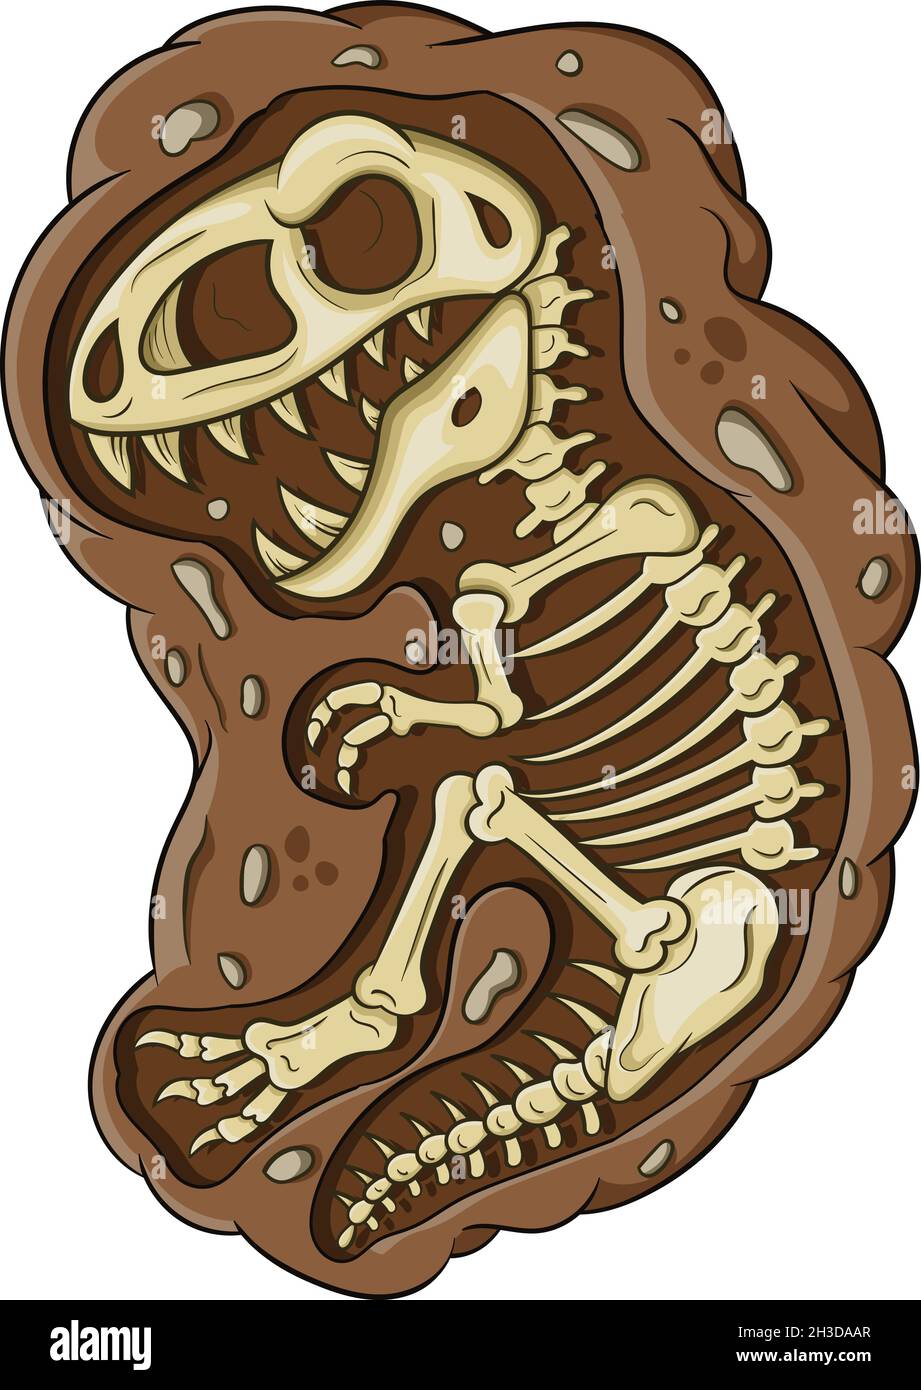 Illustration of cartoon dinosaur fossil Stock Vector